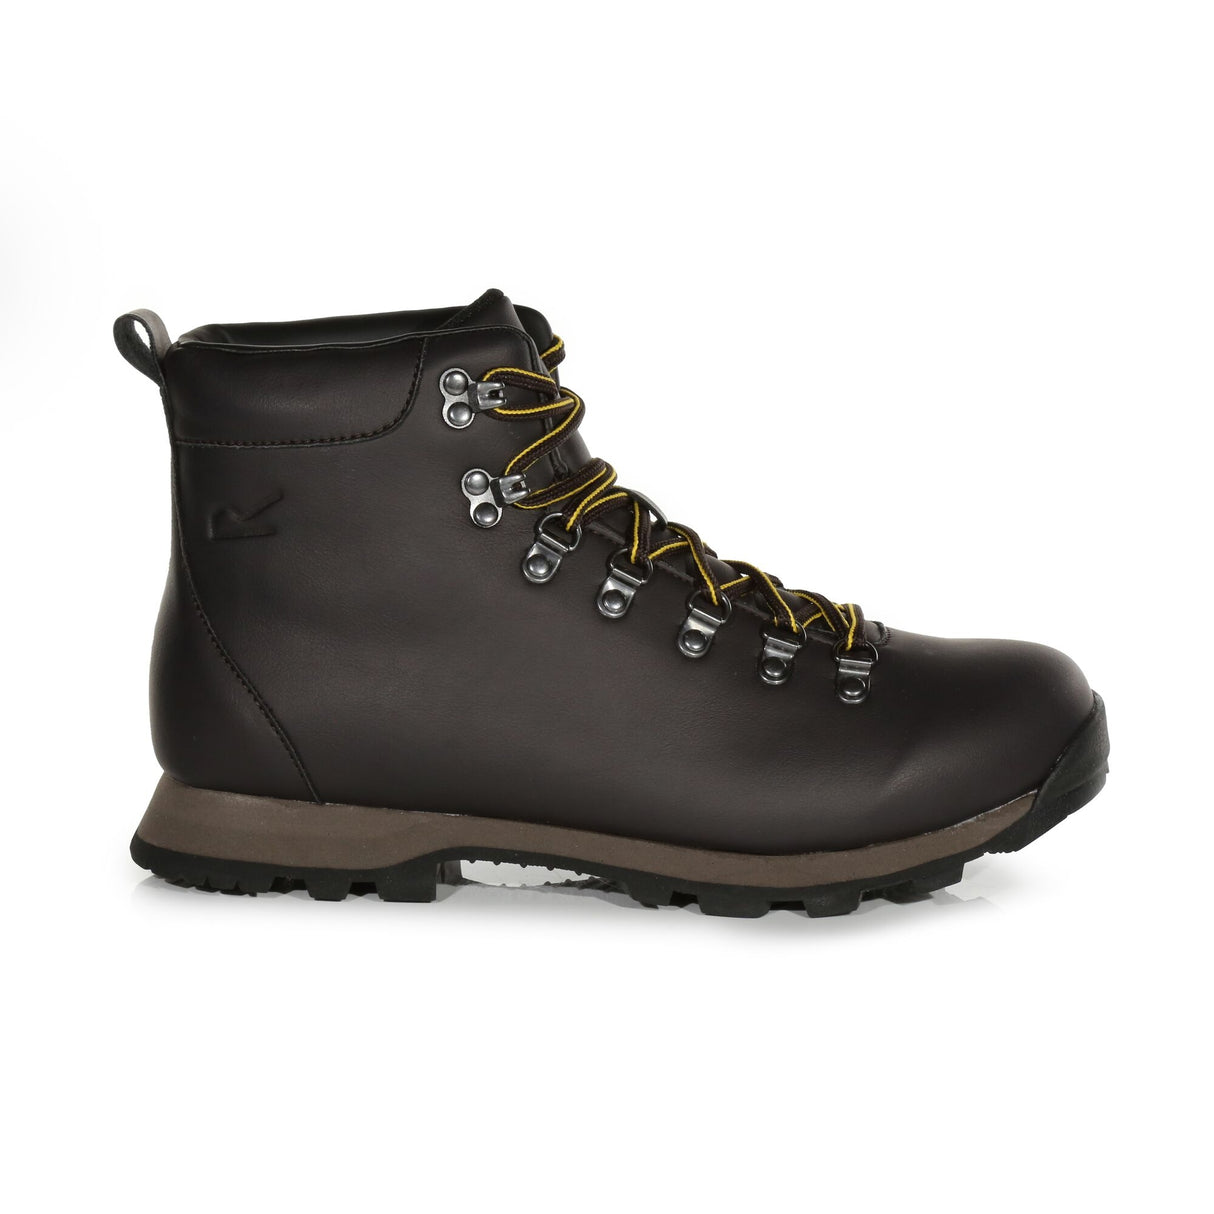 Regatta Cypress Evo Mid Leather Walking Hiking Boots - Brown